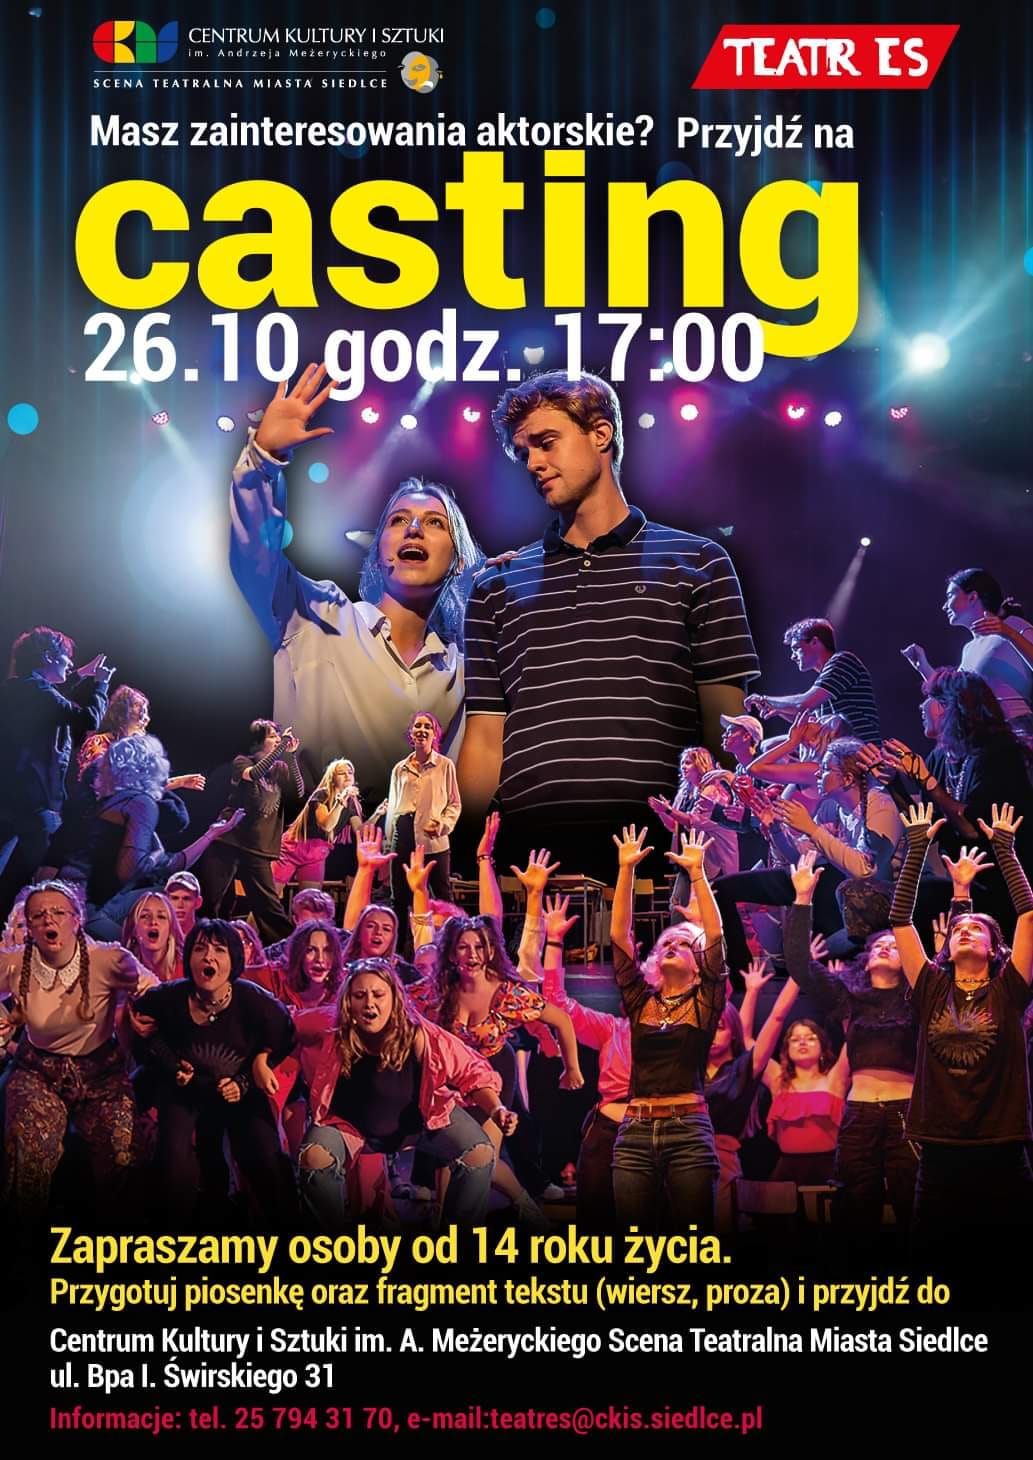 Teatr ES zaprasza na CASTING. Przesłuchania odbędą się 26 października o godz. 17:00 na Scenie Teatralnej Miasta Siedlce.